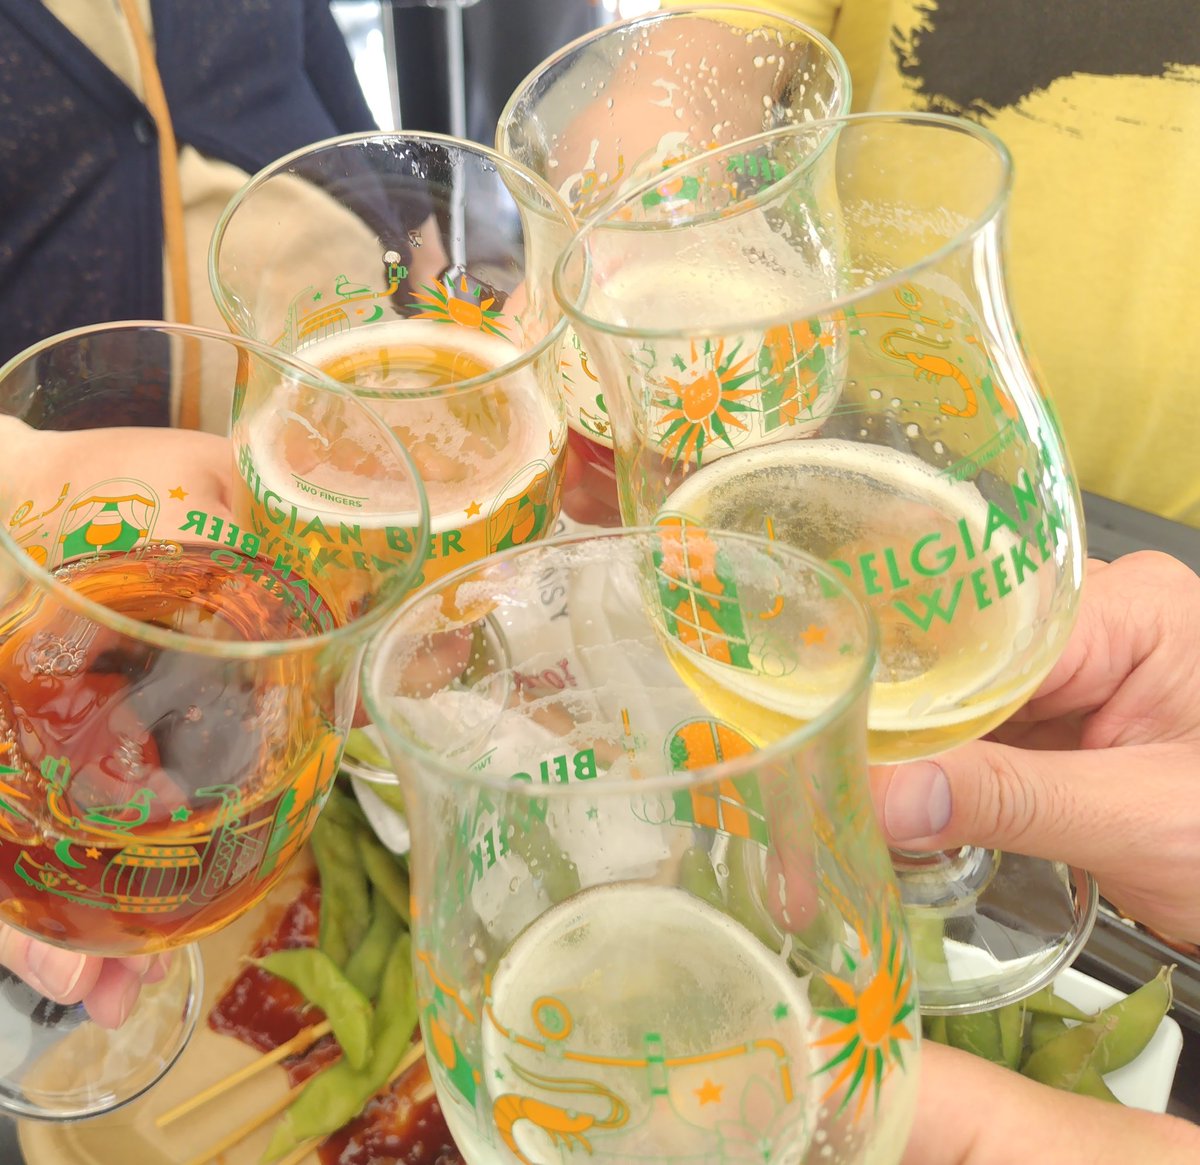 会場をフラフラしてた、ともみぃぬ夫婦を偶然はっけーん👀✨
んでもって、乾杯🍻
 #ベルギービールウィークエンド